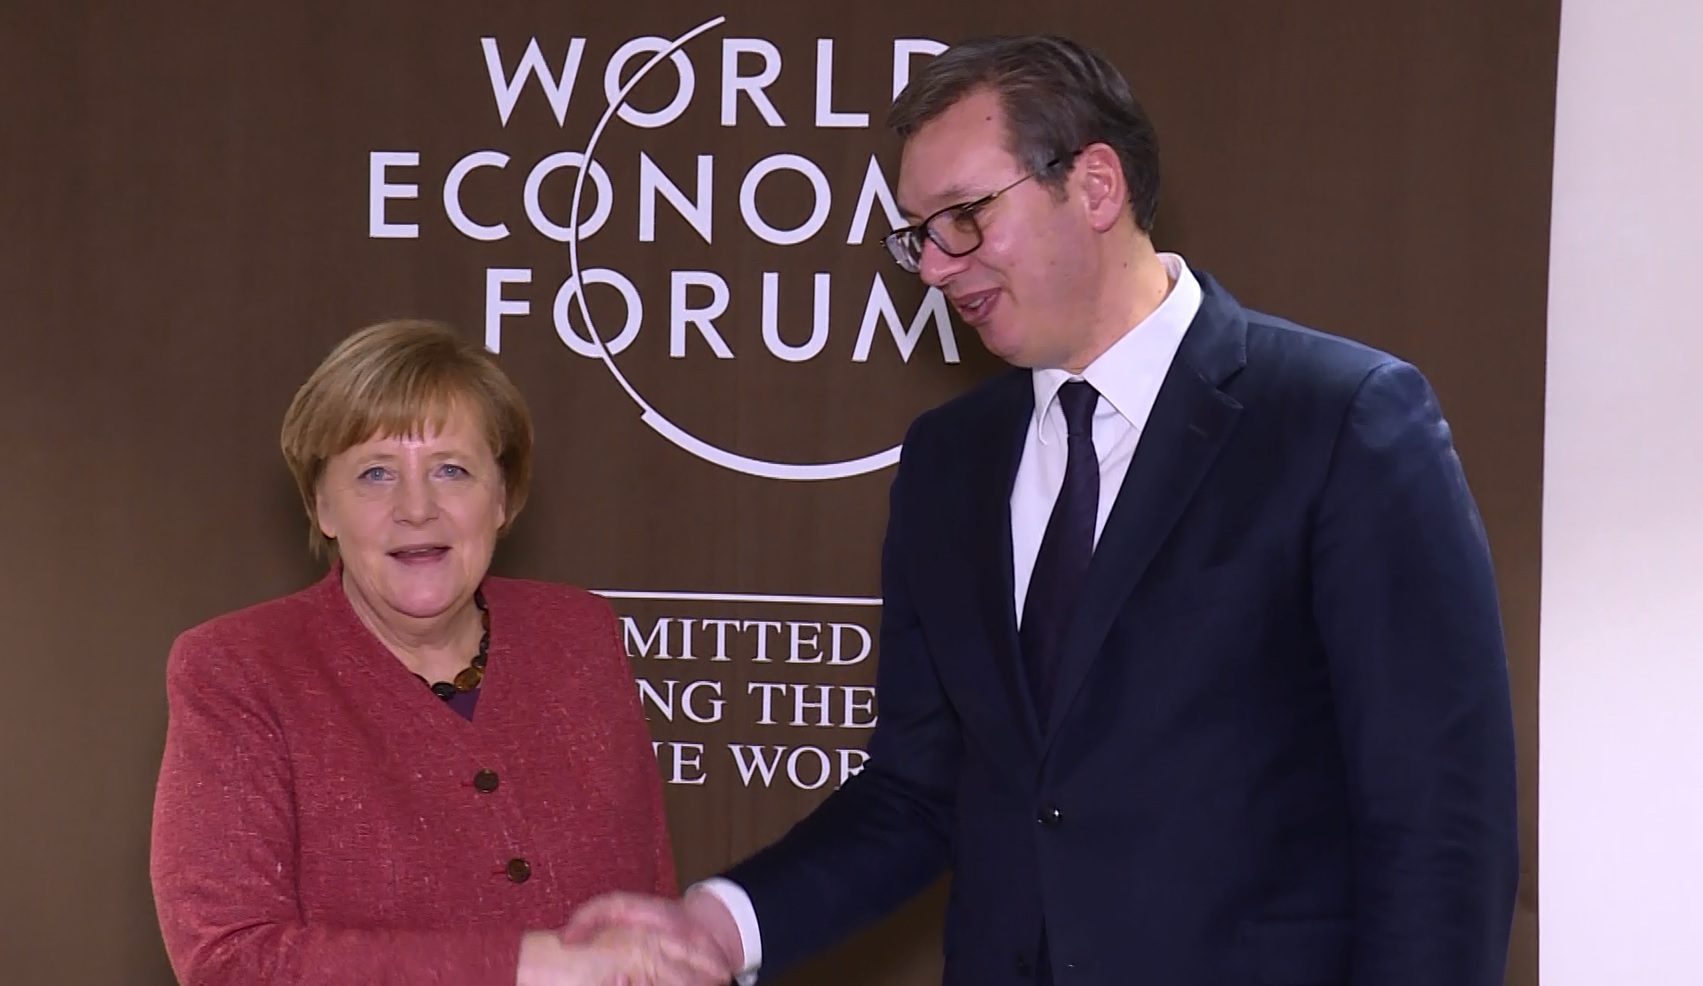 Aleksandar Vucic sastao se 23.01.2019. godine sa nemackom kancelarkom Angelom Merkel na Svetskom ekonomskom forumu u Davosu